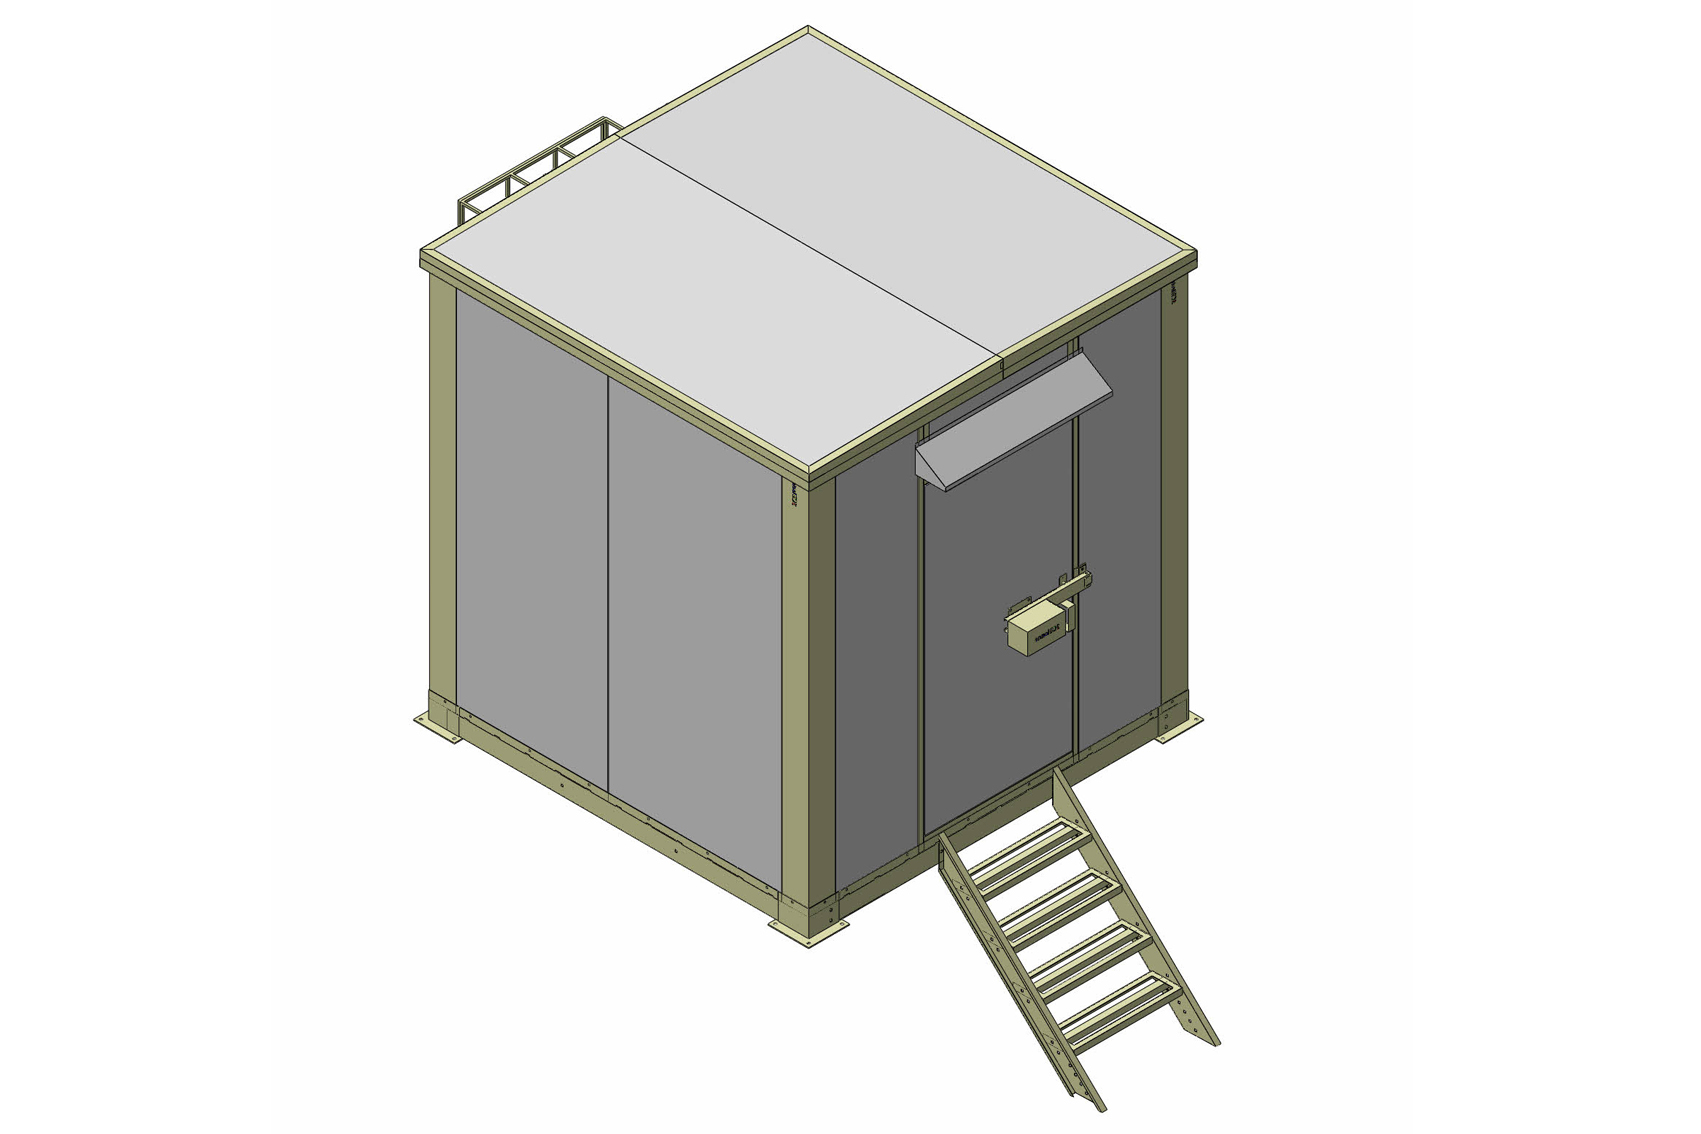 Dự án: Cung cấp shelter cho các trạm kiểm soát cố định, cục Tần số